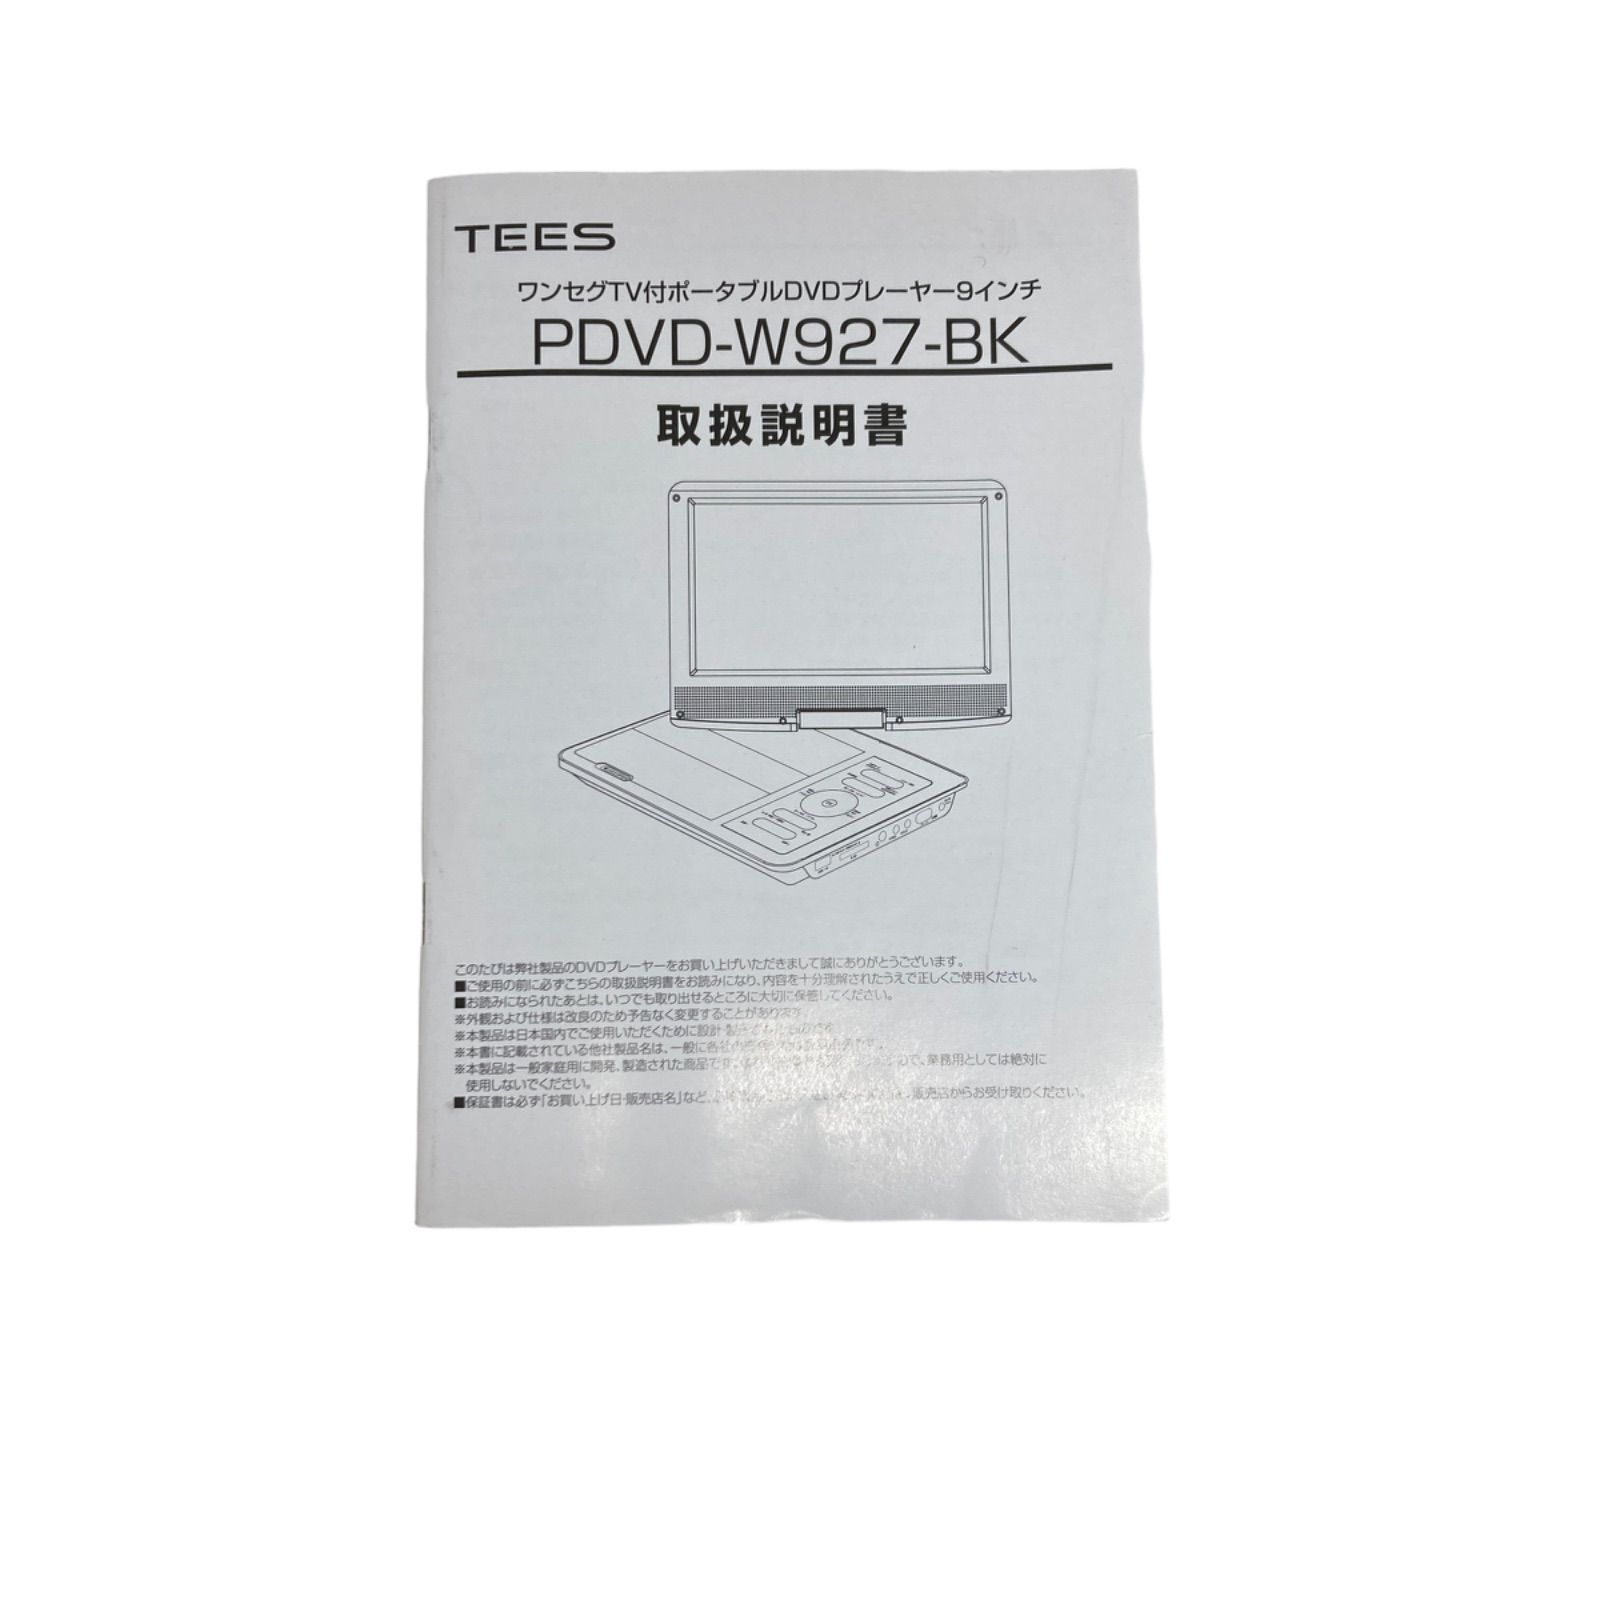 ワンセグTV付きポータブルDVDプレイヤー9インチ 型番PDVD-W927-BK 